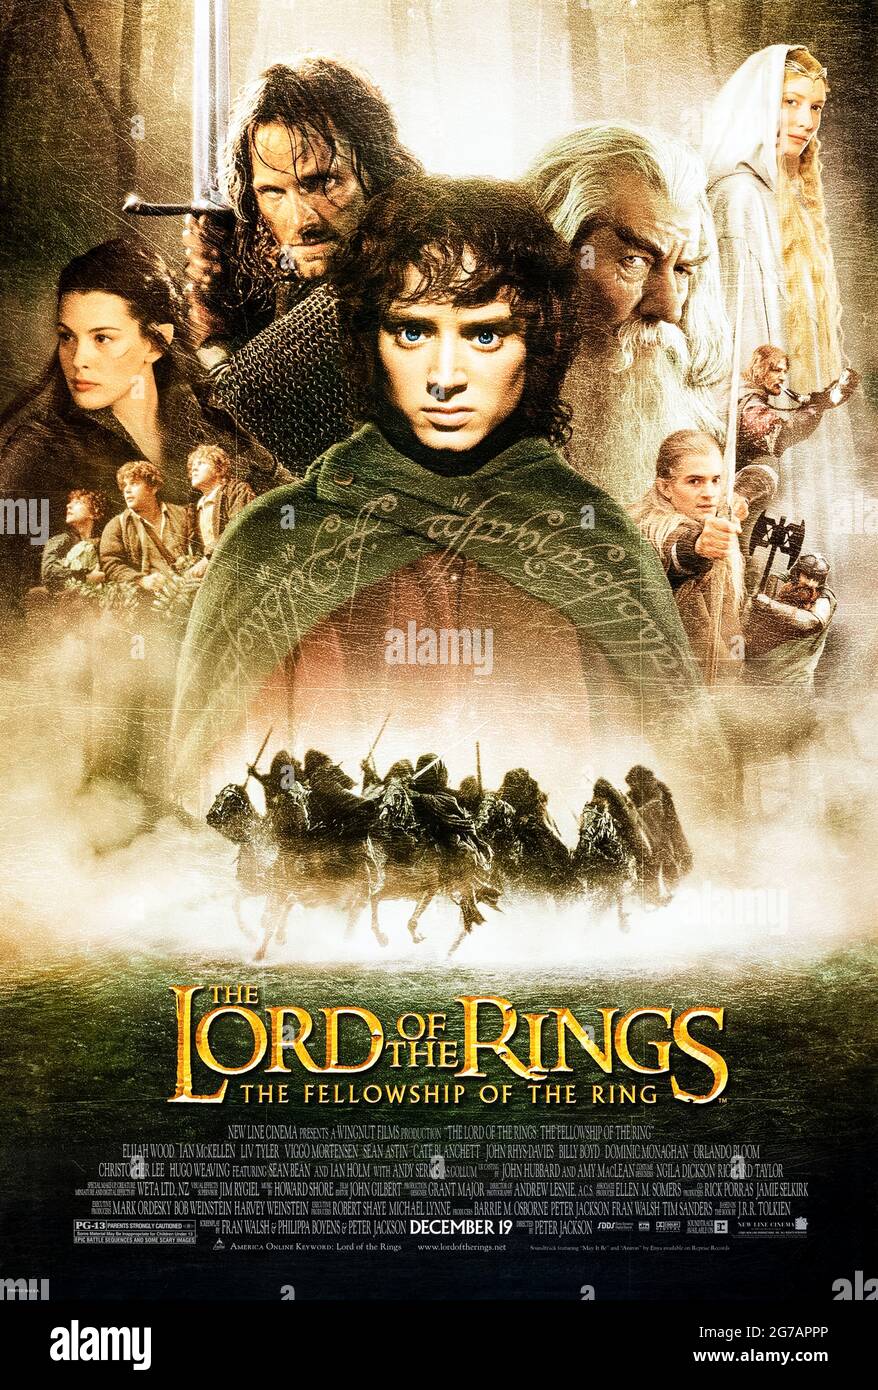 The Lord of the Rings: The Fellowship of the Ring (2001) von Peter Jackson mit Elijah Wood, Ian McKellen, Orlando Bloom und Sean Bean. Epische Adaption des Buches von J.R.R. Tolkien über eine Gruppe, die auf der Suche ist, einen gefährlichen Ring zu zerstören. Foto eines Original-Posters aus dem Jahr 2001 (USA) ***NUR FÜR REDAKTIONELLE ZWECKE***. Beschreibung: BFA / New Line Cinema Stockfoto